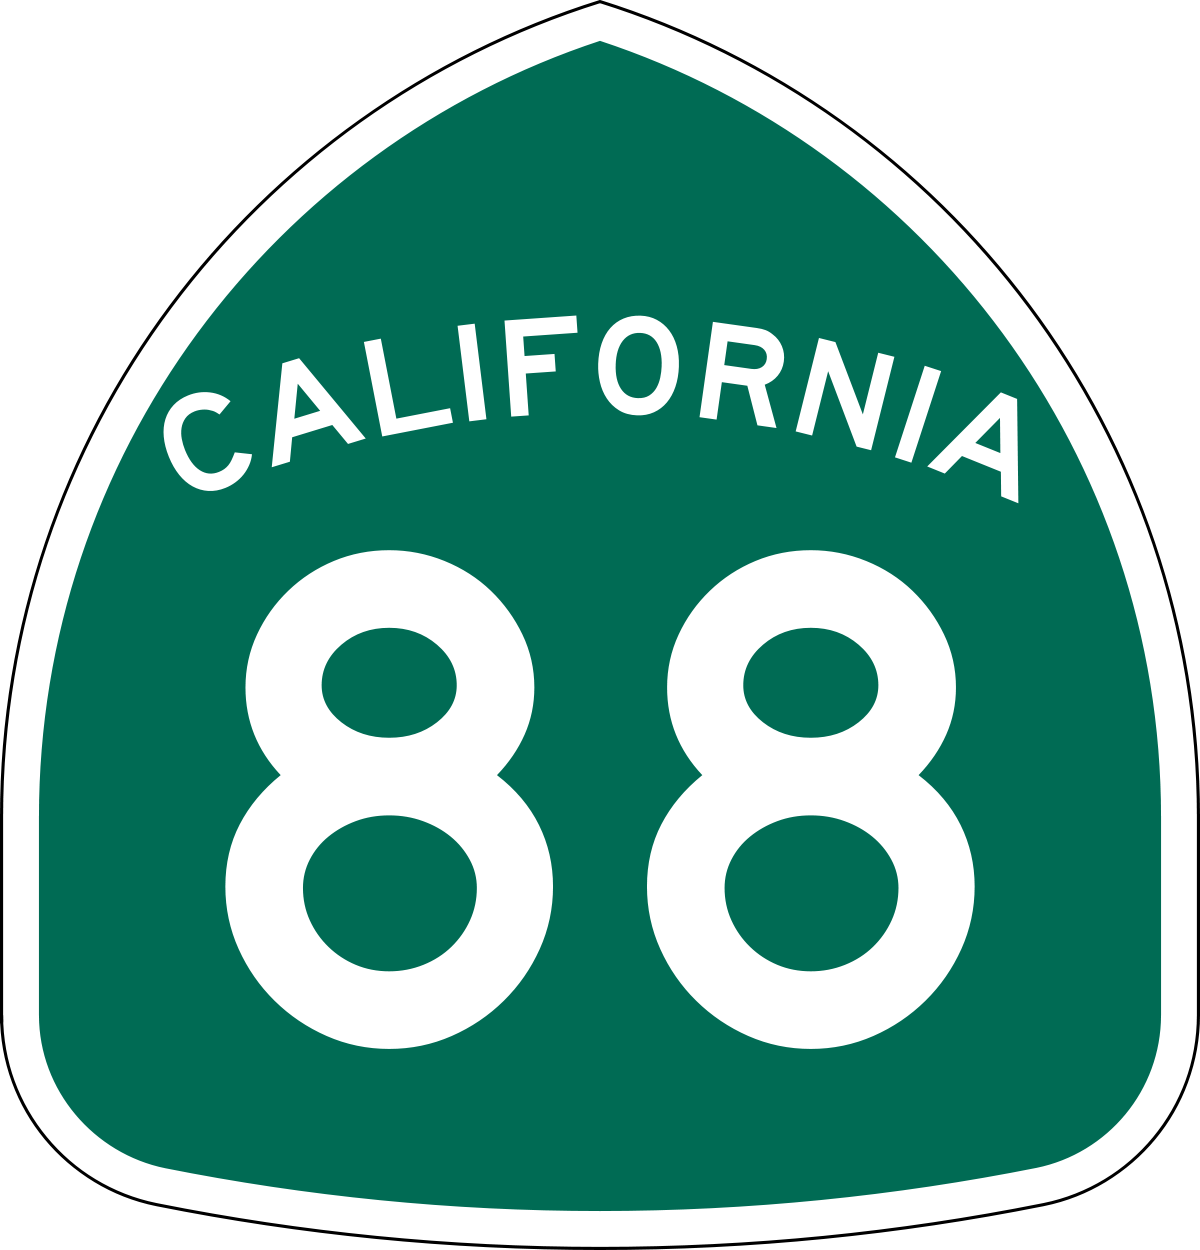 Highway 88 Corridor